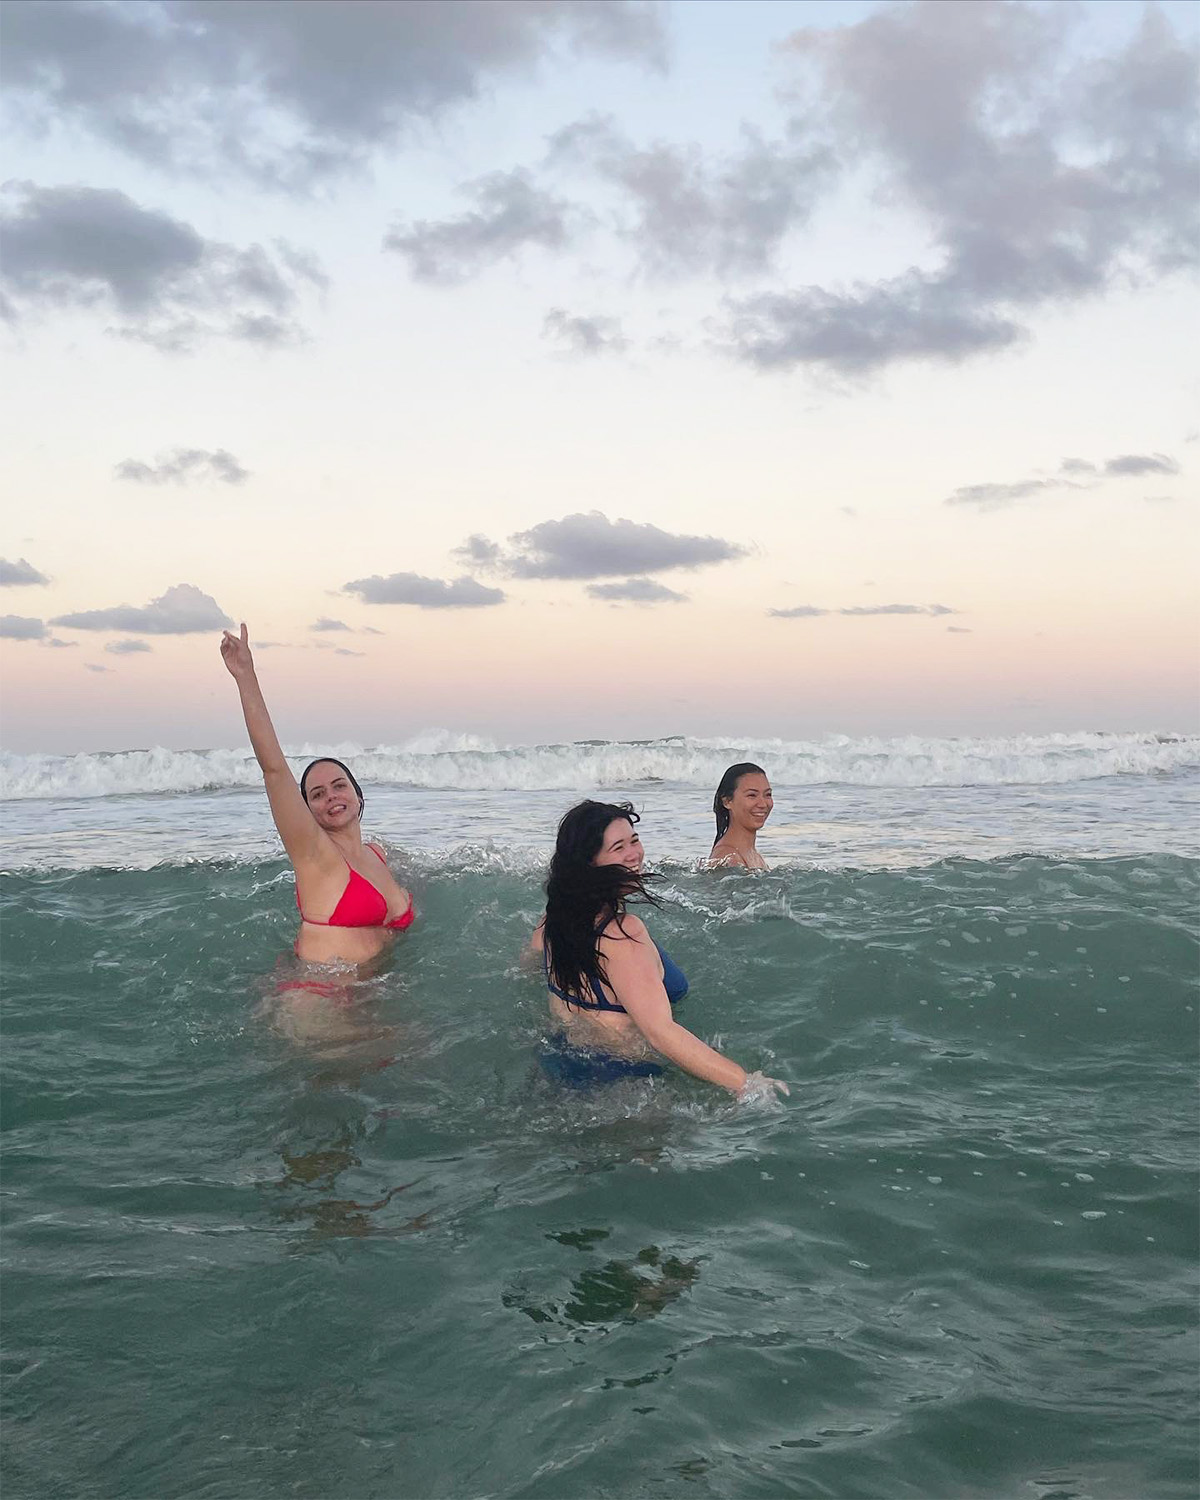 Three people in the ocean.